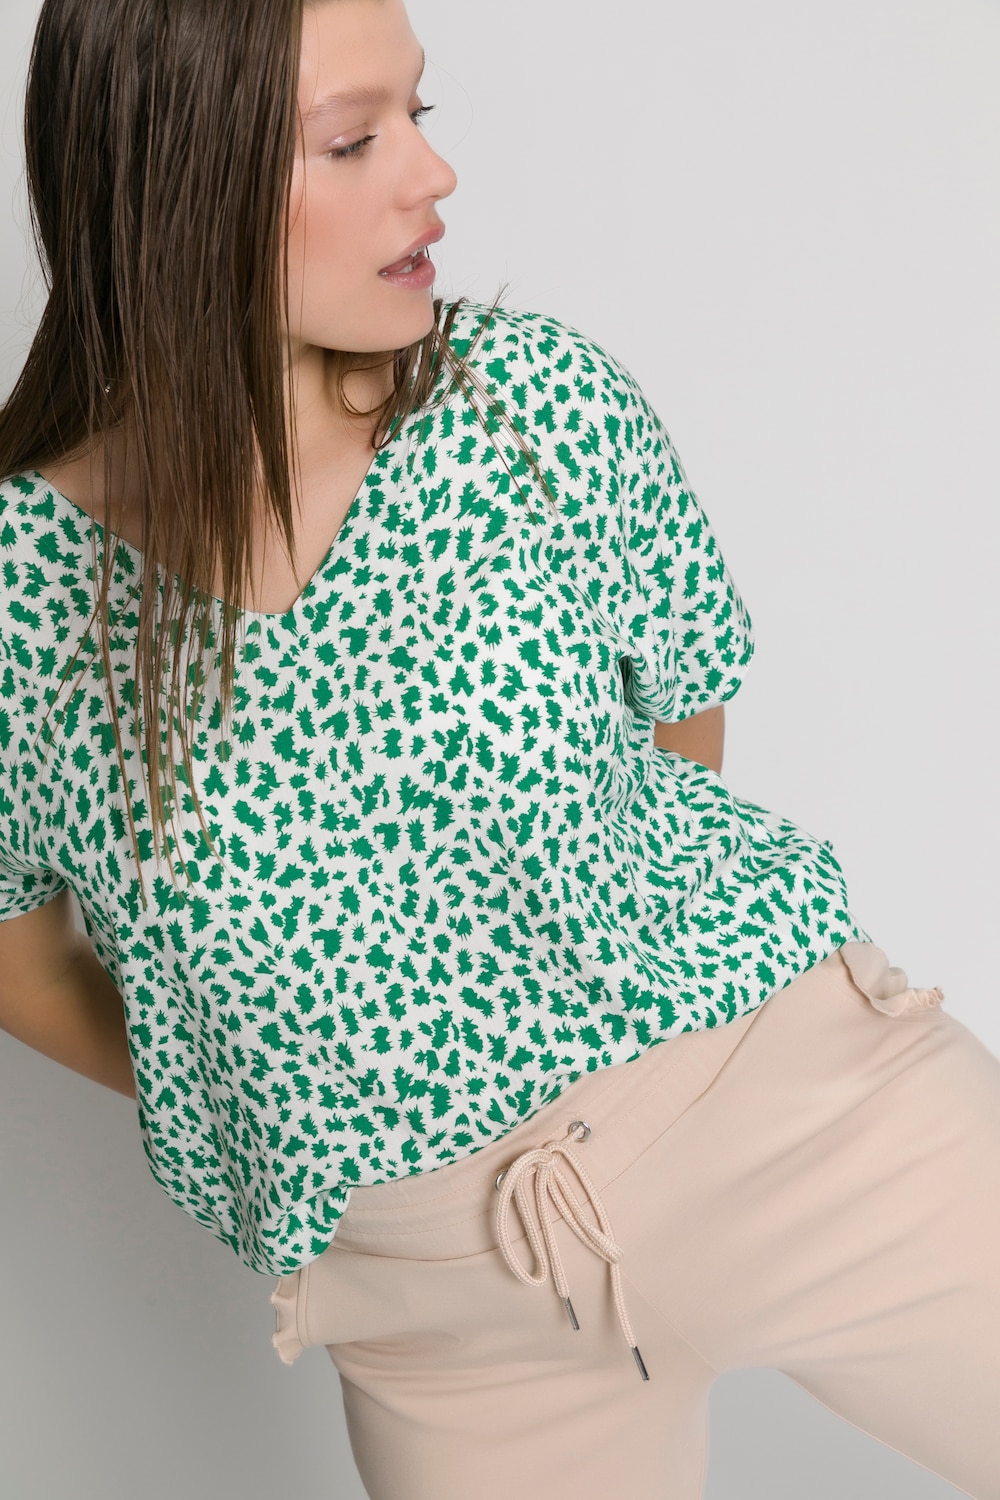 Grote Maten blouseshirt, Dames, groen, Maat: 46/48, Viscose, Studio Untold